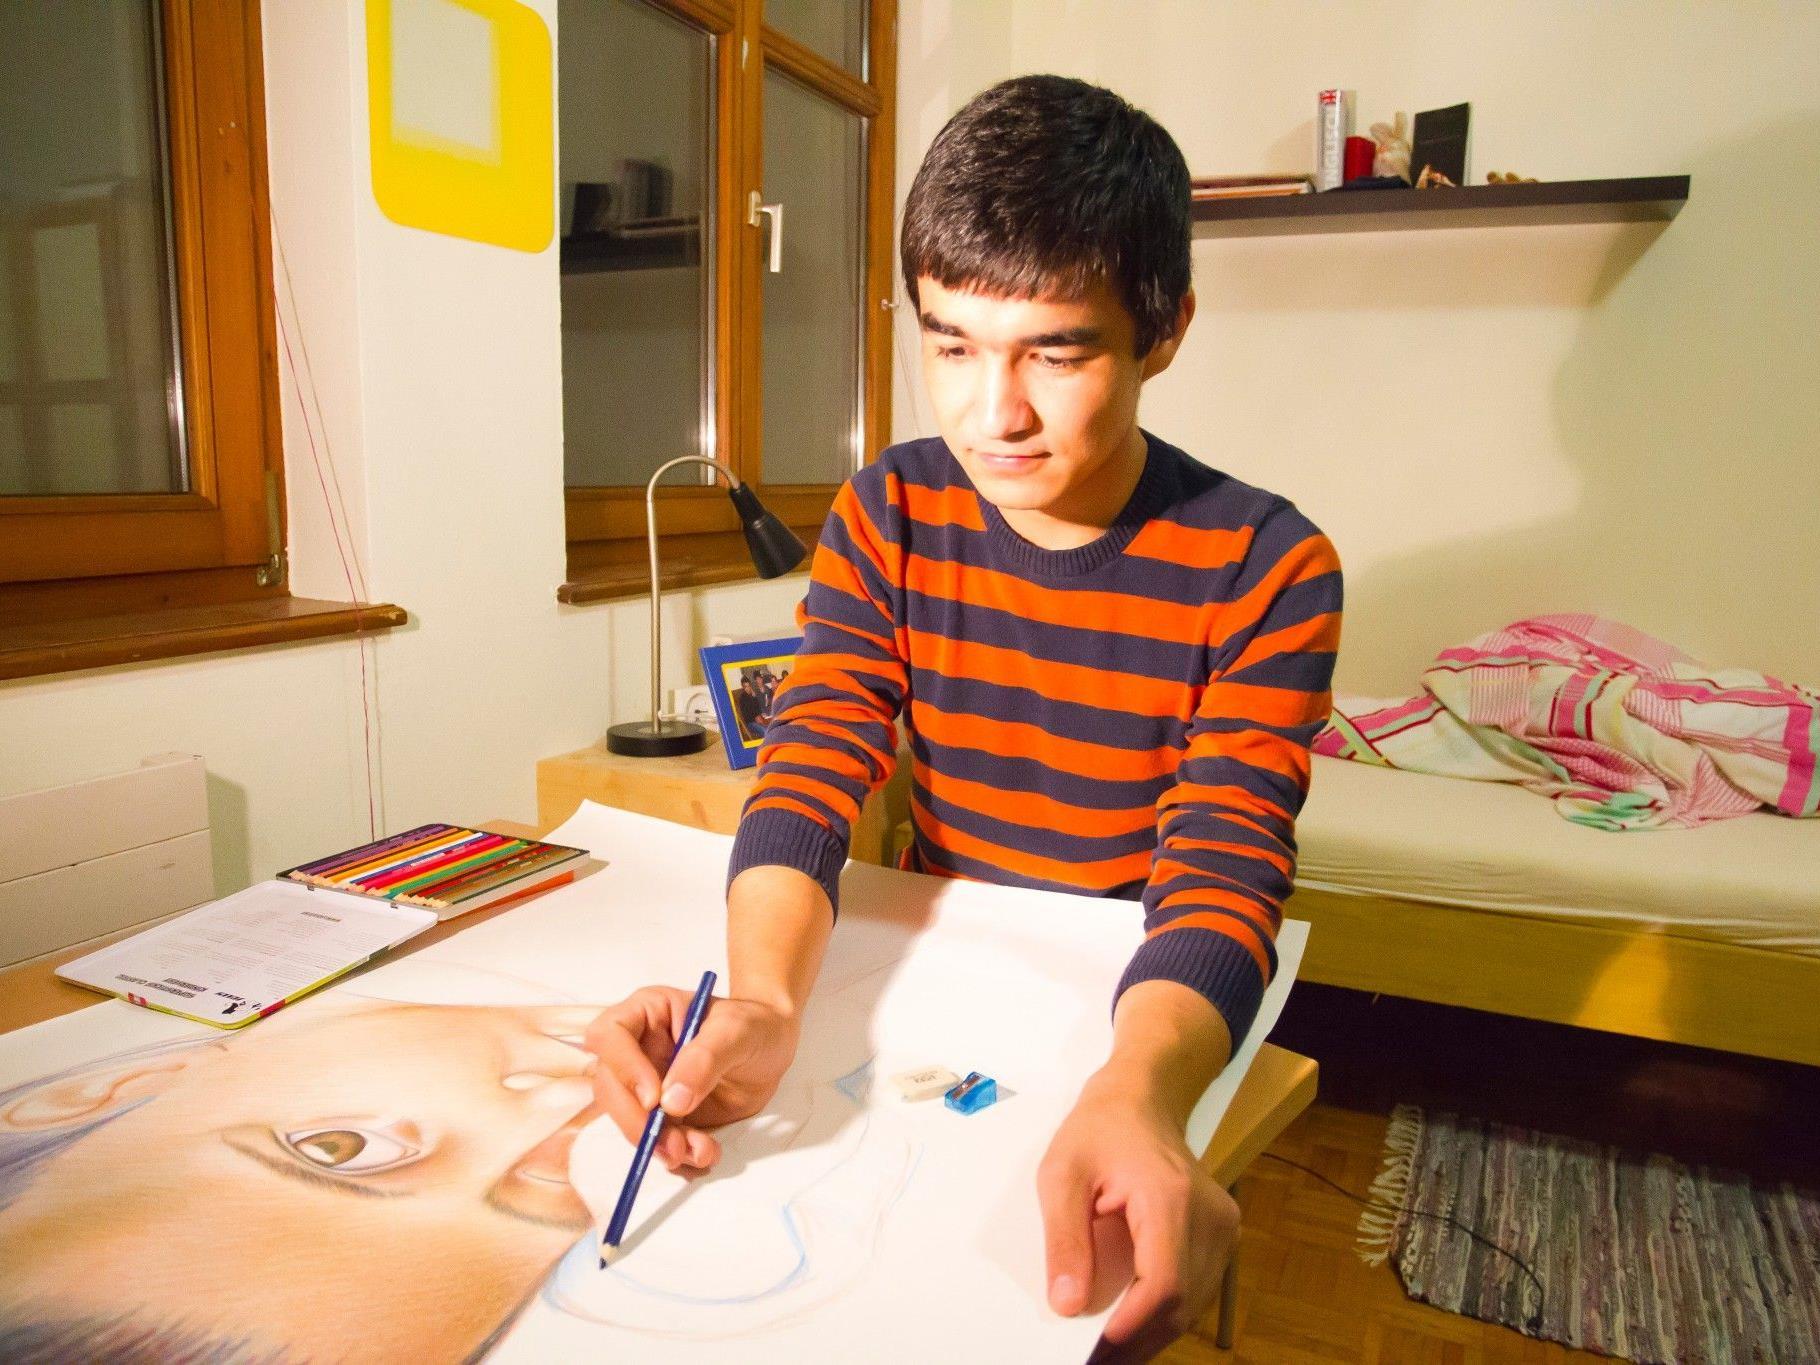 Für den 15-jährigen Zaker will eine Frau Kunstbücher spenden. Er zeichnet mit Begeisterung.